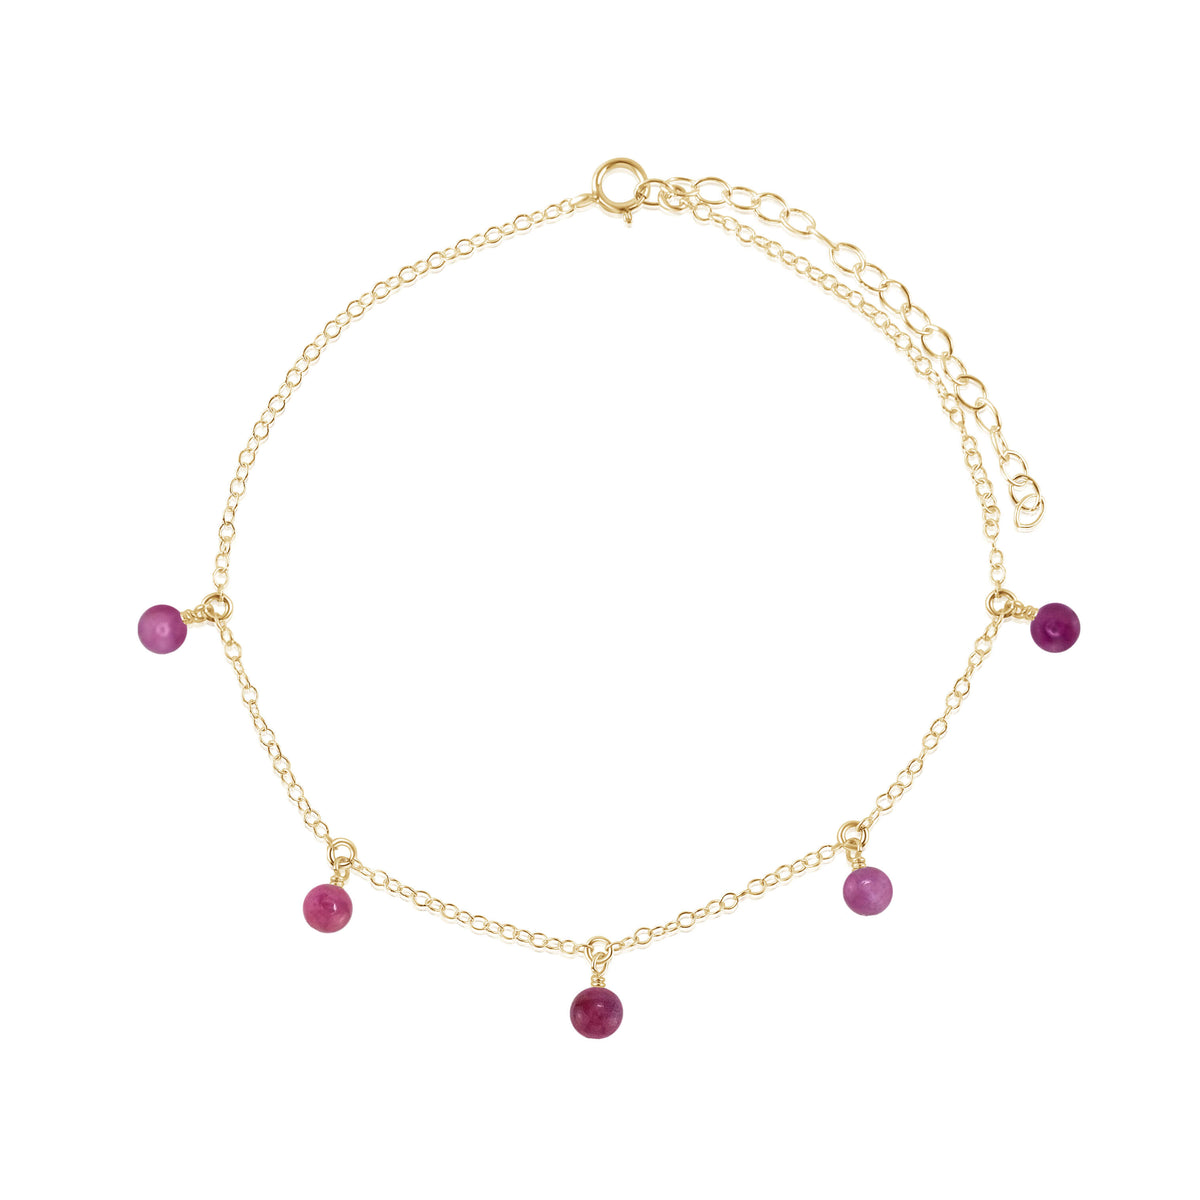 Bead Drop Anklet - Ruby - 14K Gold Fill - Luna Tide Handmade Jewellery